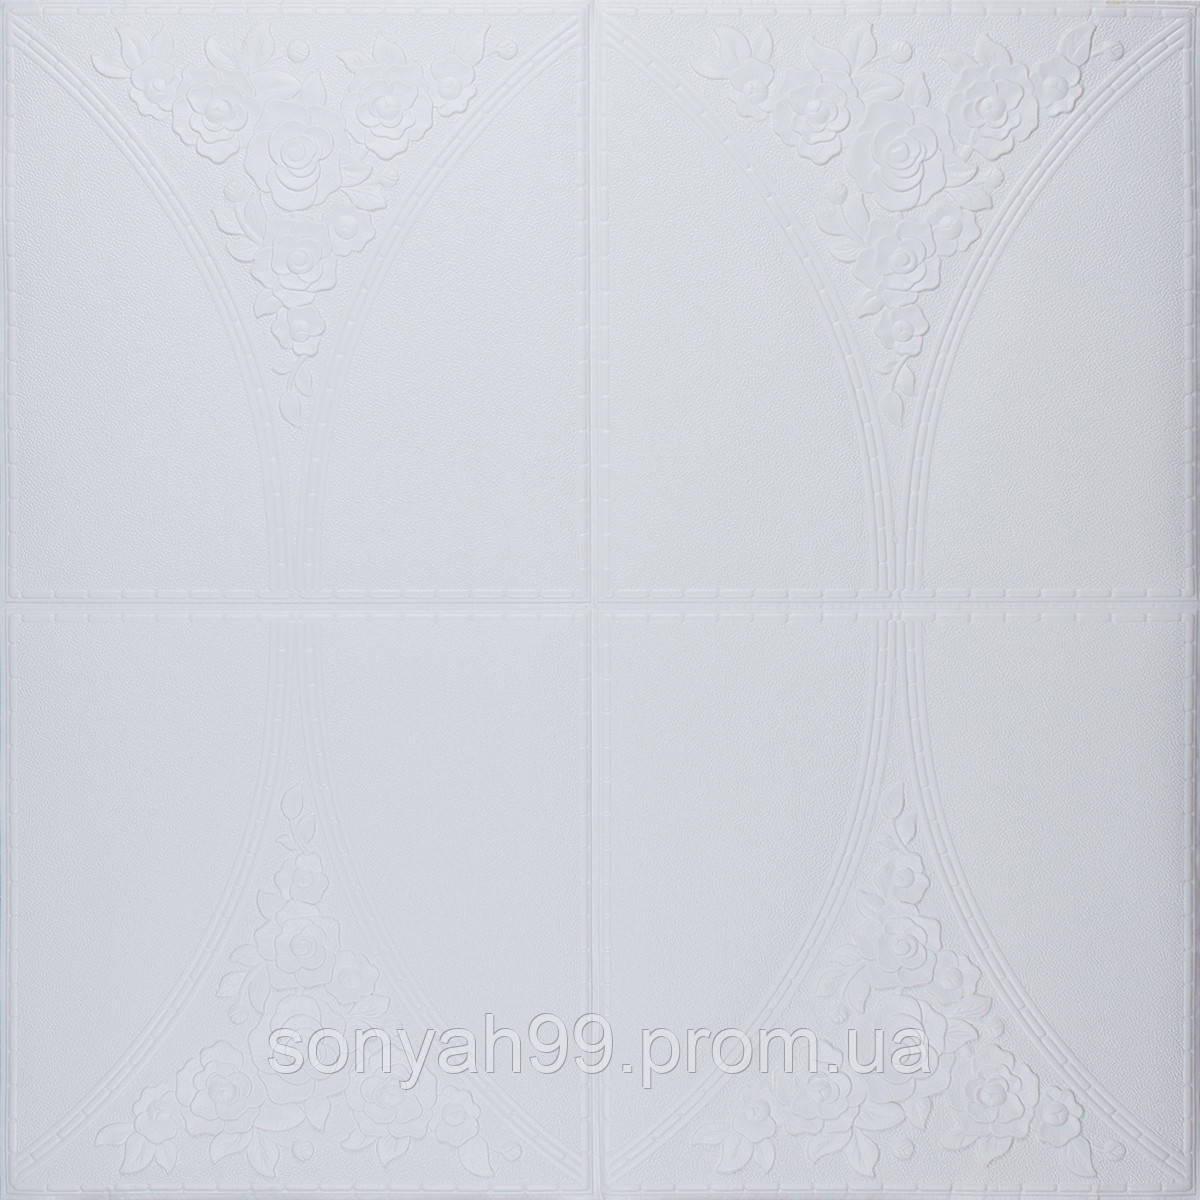 Самоклеюча 3D(3д) Панель Декоративна для Стелі та Стін 70см*70см*4мм Біла Троянда